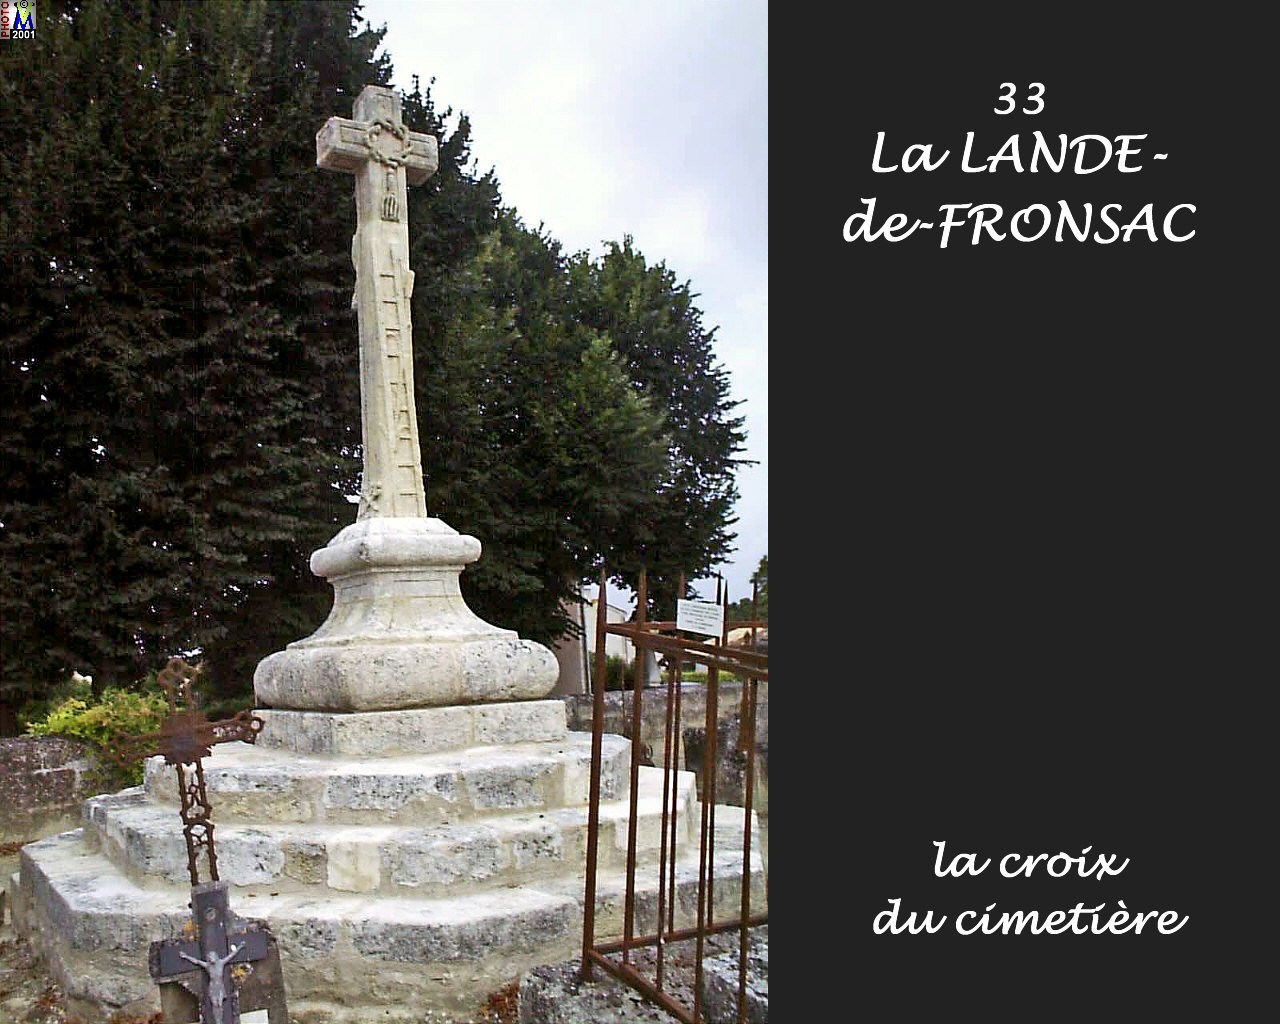 33LANDE-FRONSAC_croix_100.jpg